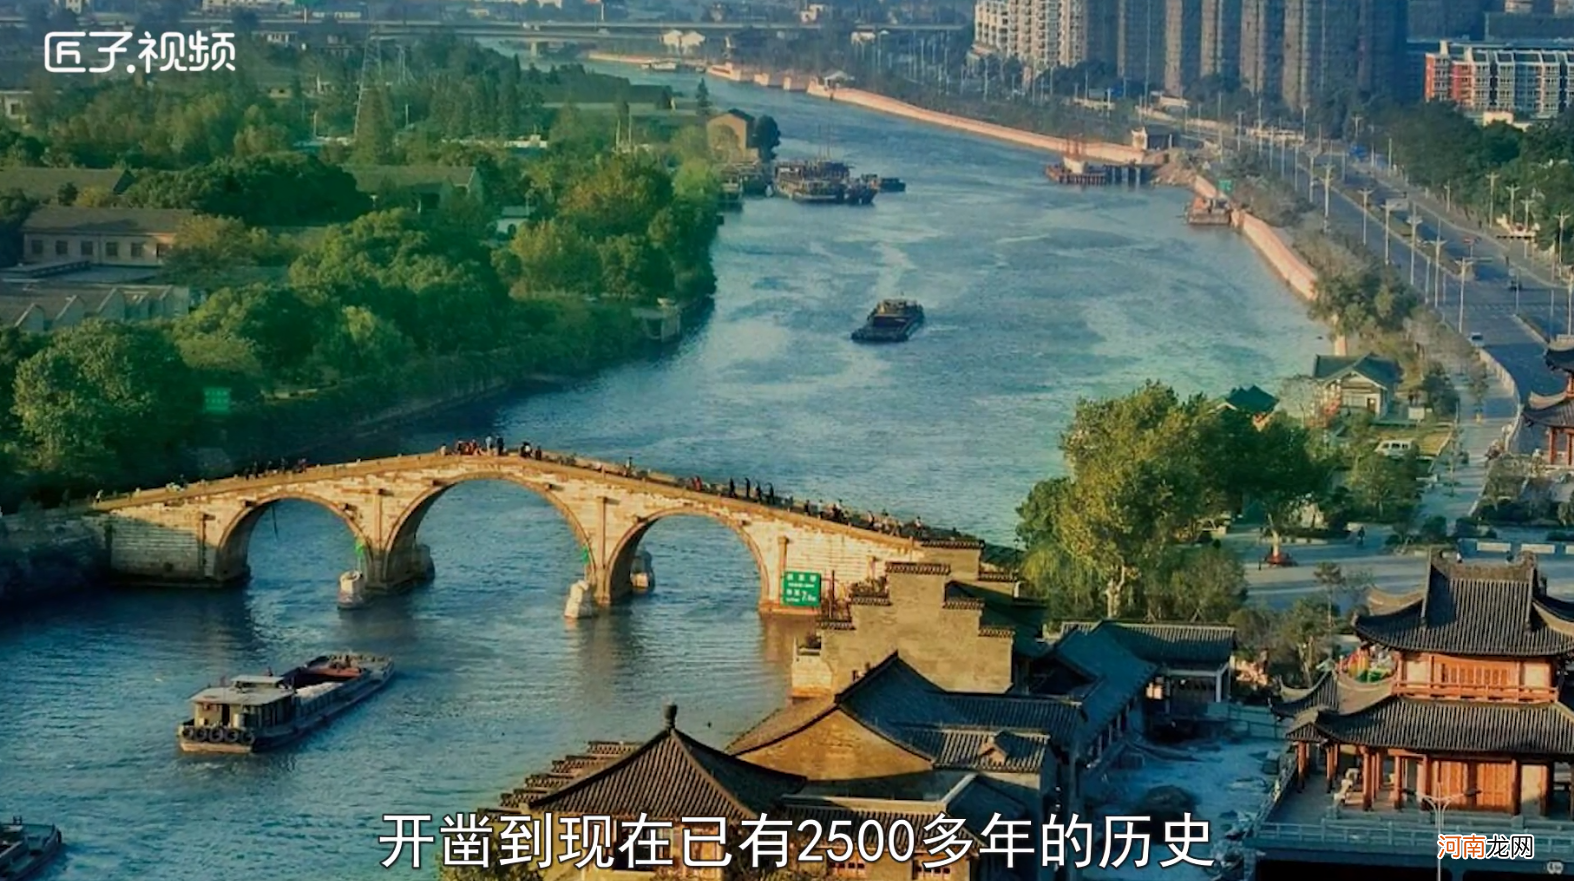 京杭大运河始建于什么时间